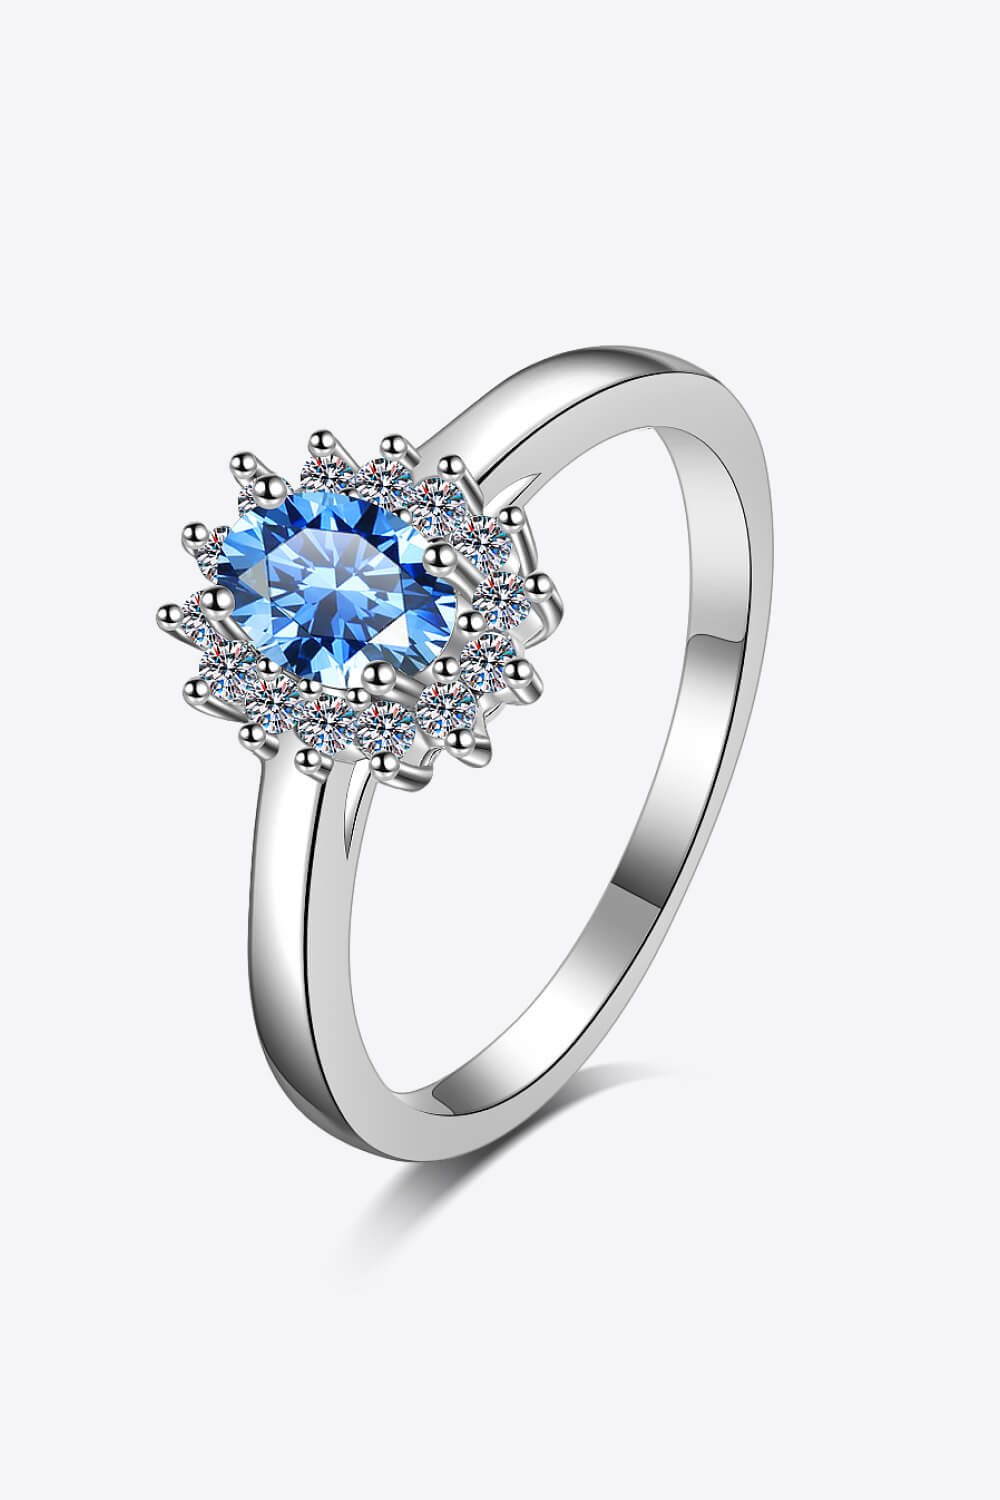 On My Own Moissanite Ring-Trendsi-Cobalt Blue-4-[option4]-[option5]-[option6]-[option7]-[option8]-Shop-Boutique-Clothing-for-Women-Online